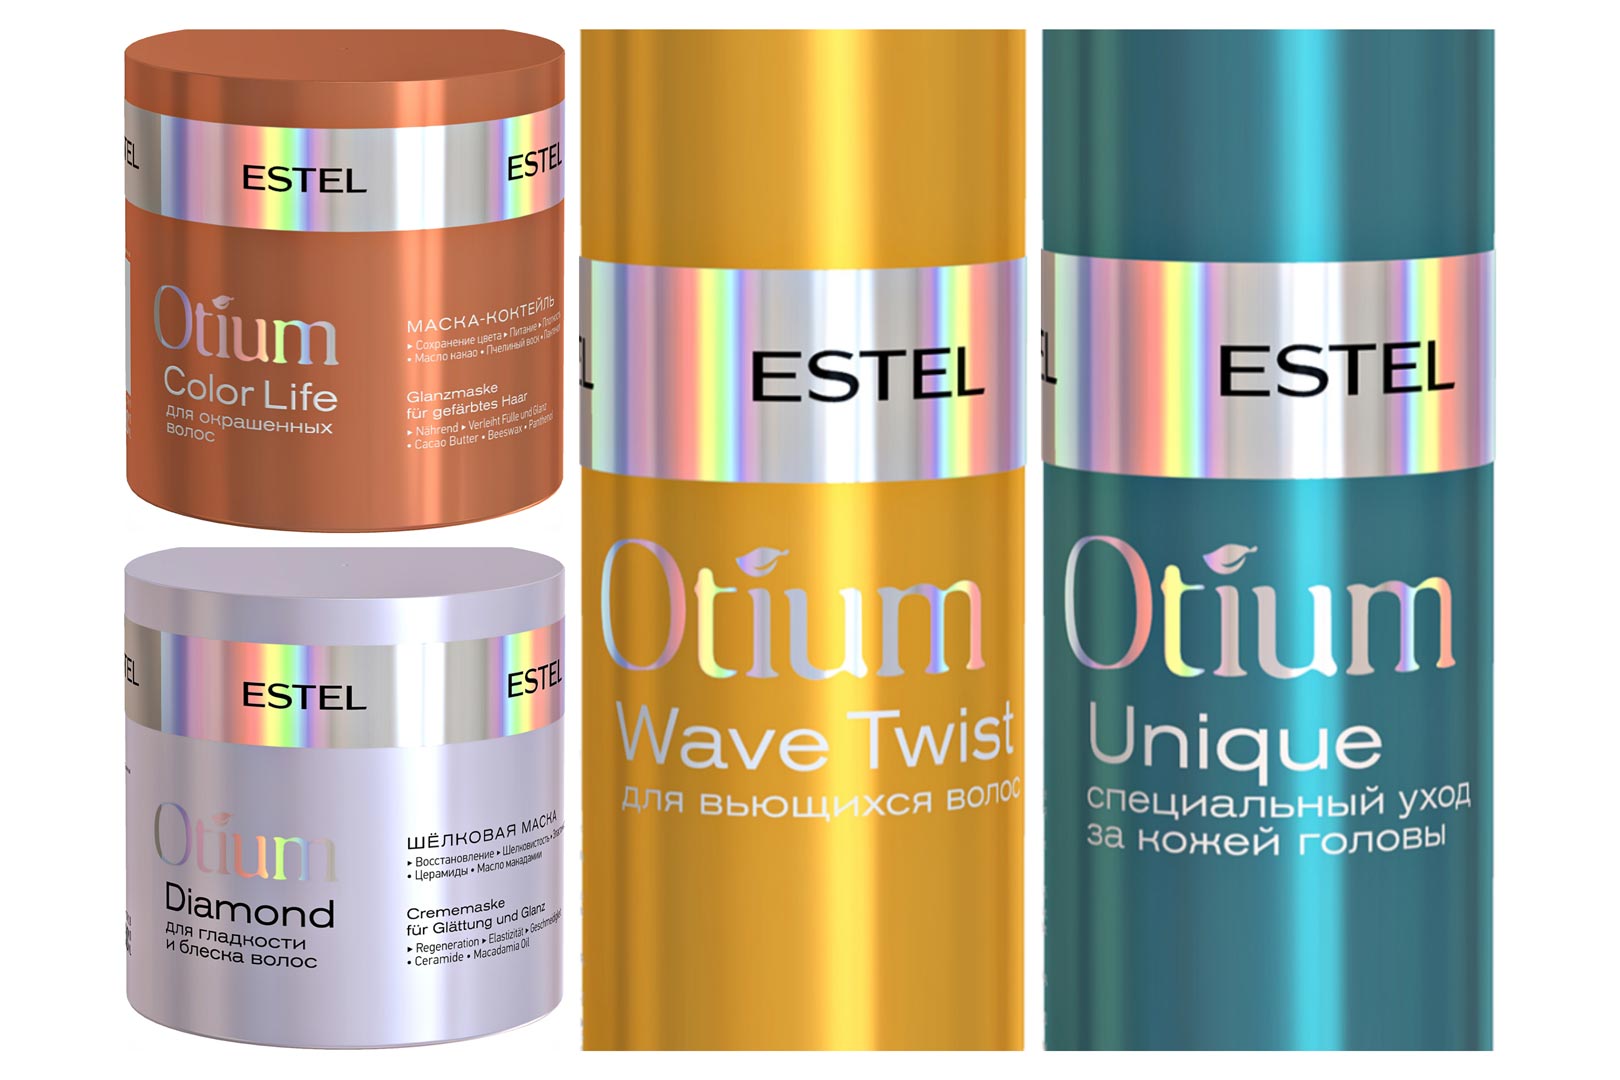 ESTEL-relauncht-OTIUM-1992-1